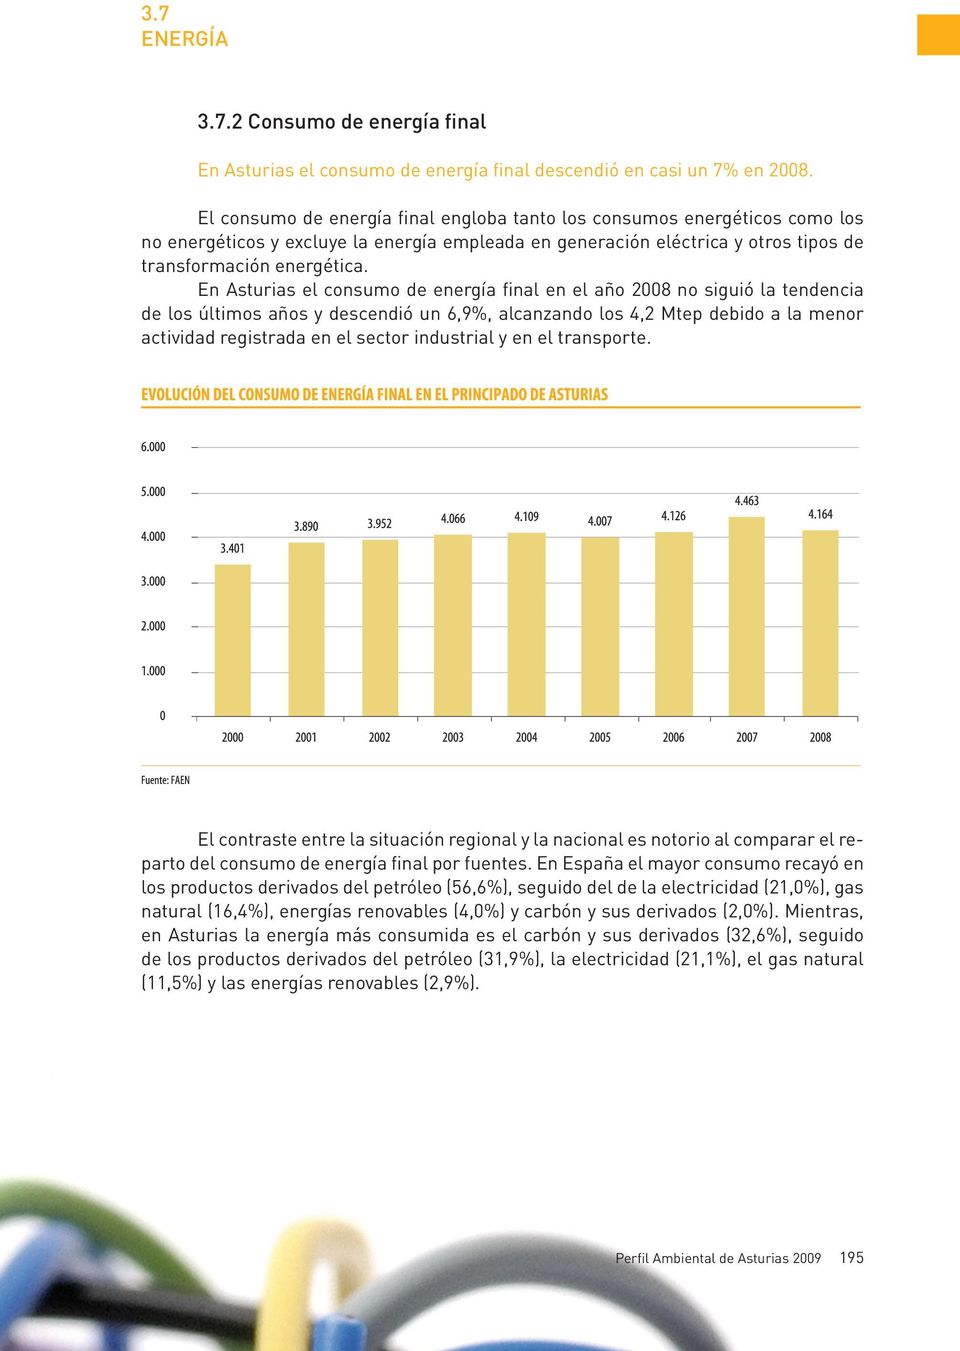 En Asturias el consumo de energía final en el año 2008 no siguió la tendencia de los últimos años y descendió un 6,9%, alcanzando los 4,2 Mtep debido a la menor actividad registrada en el sector